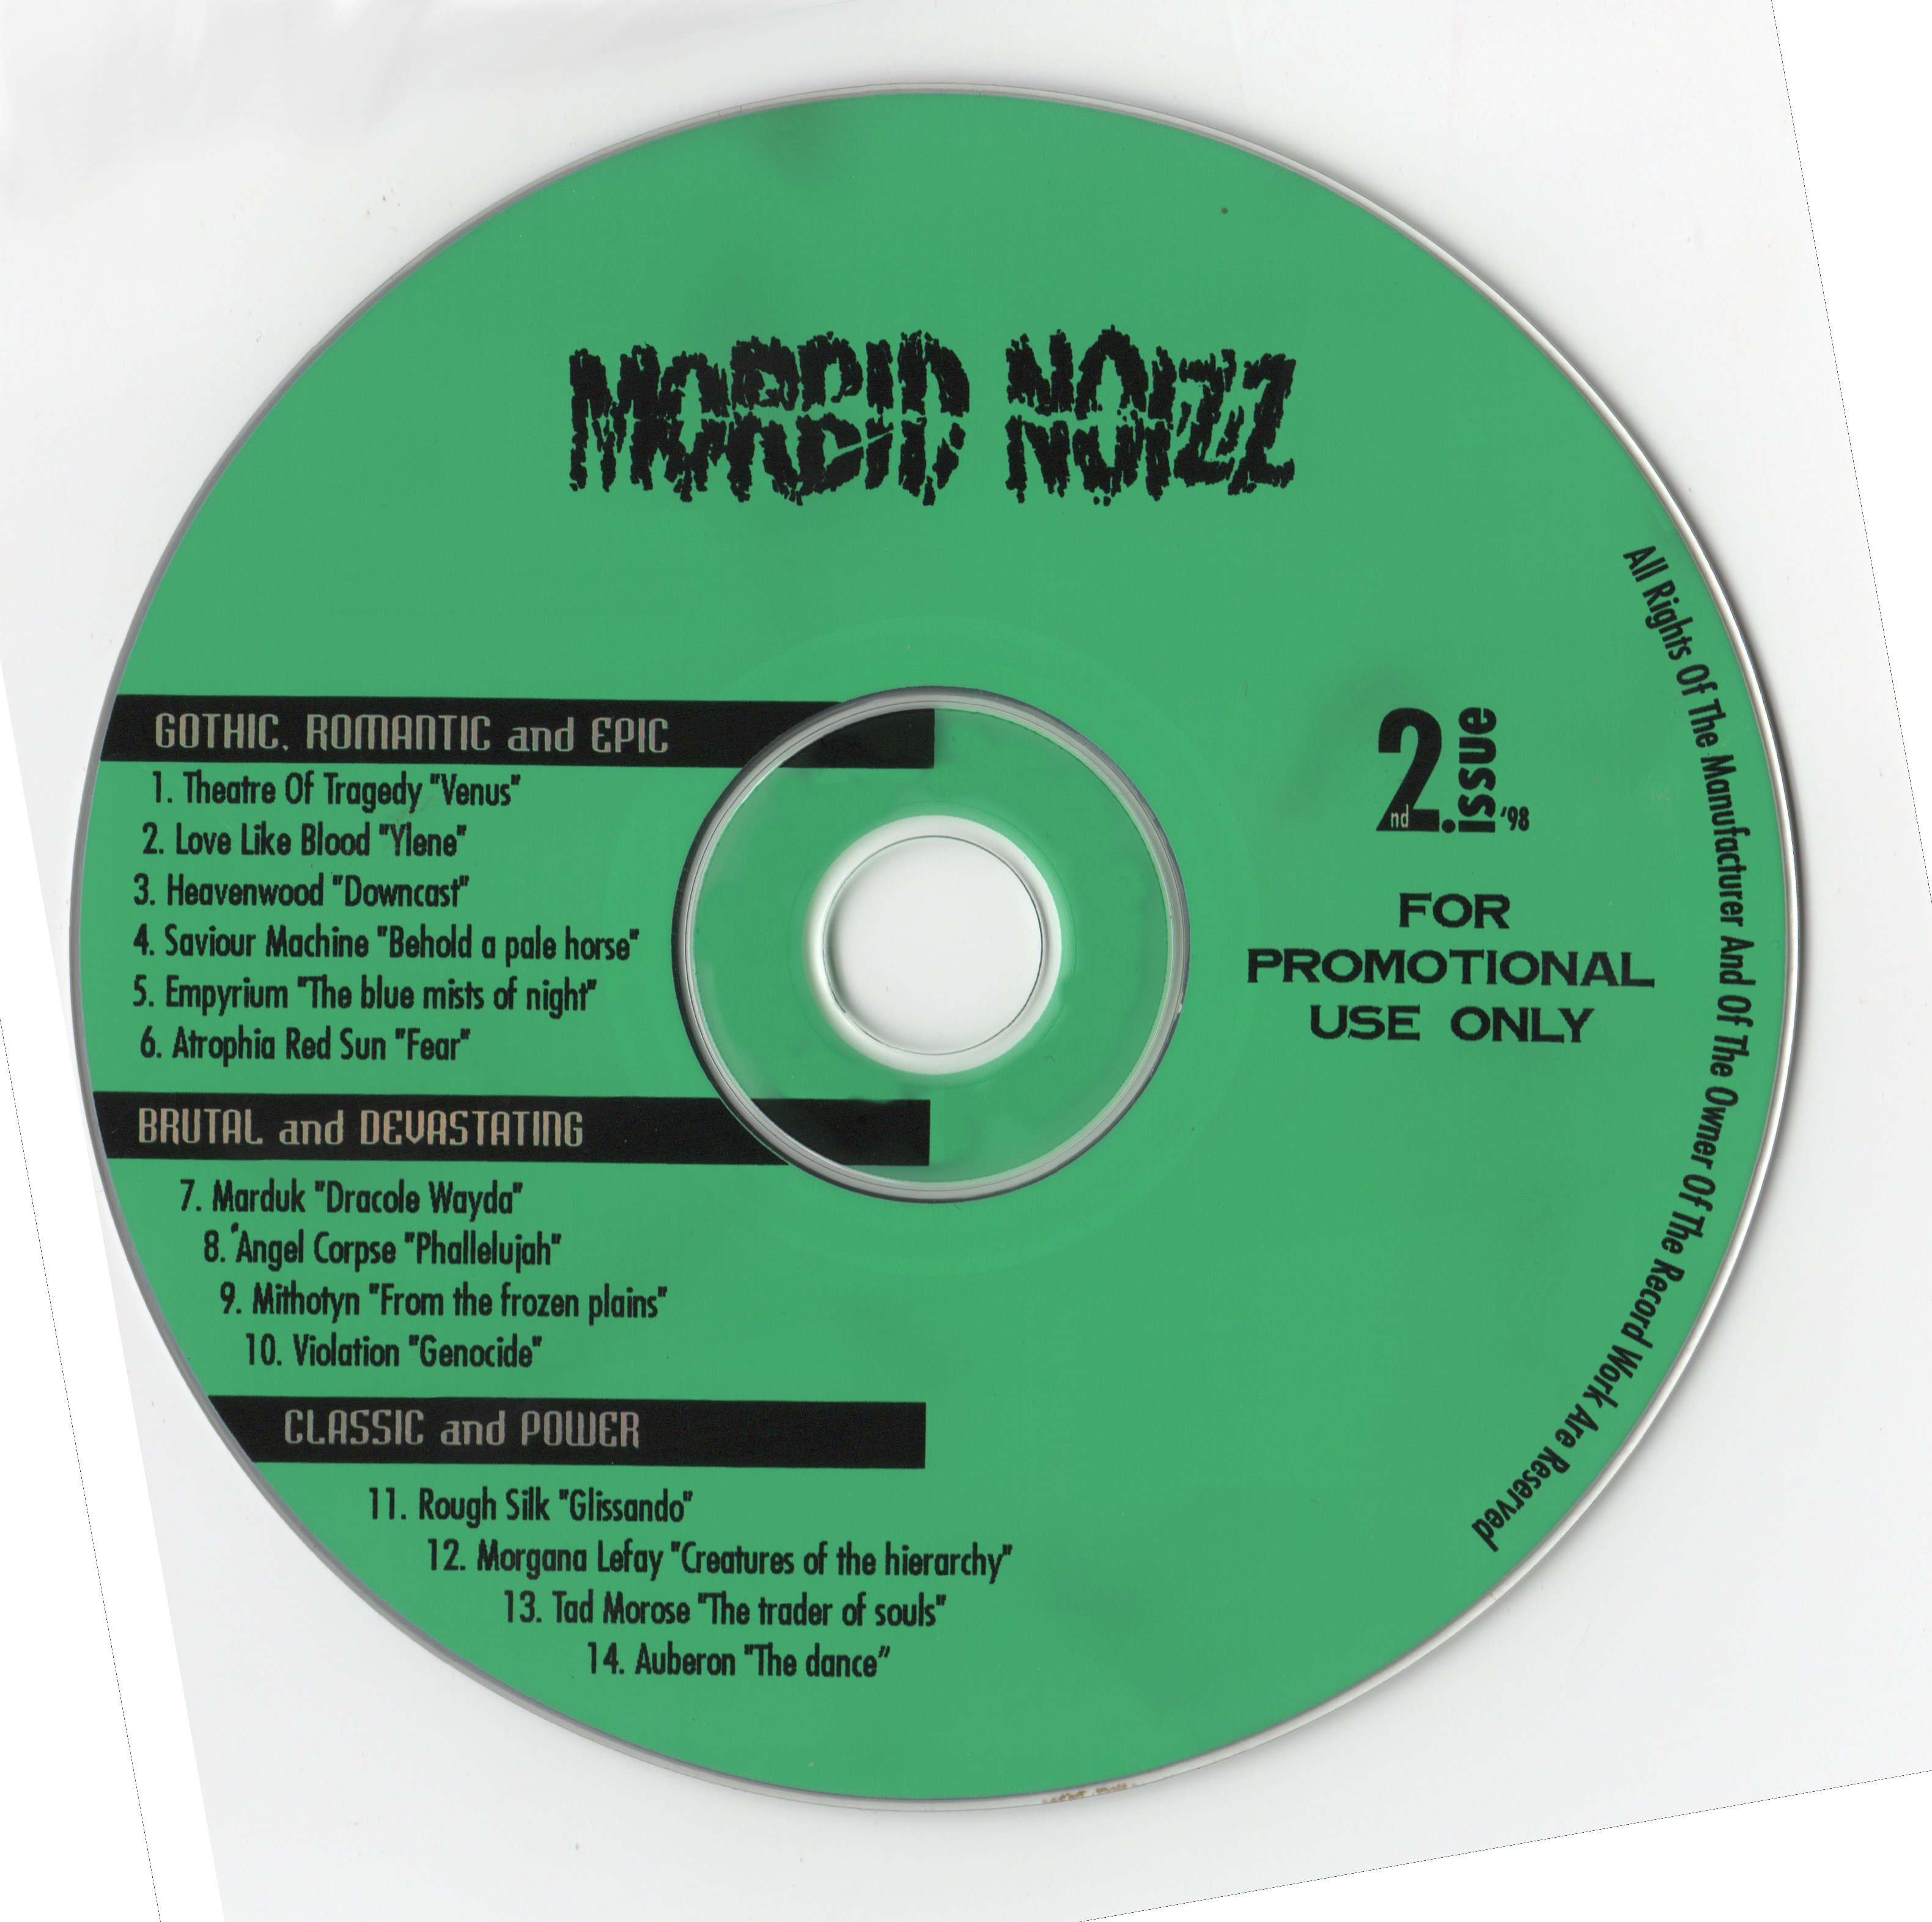 Skład – Norbid Noizz 2 Issue’98